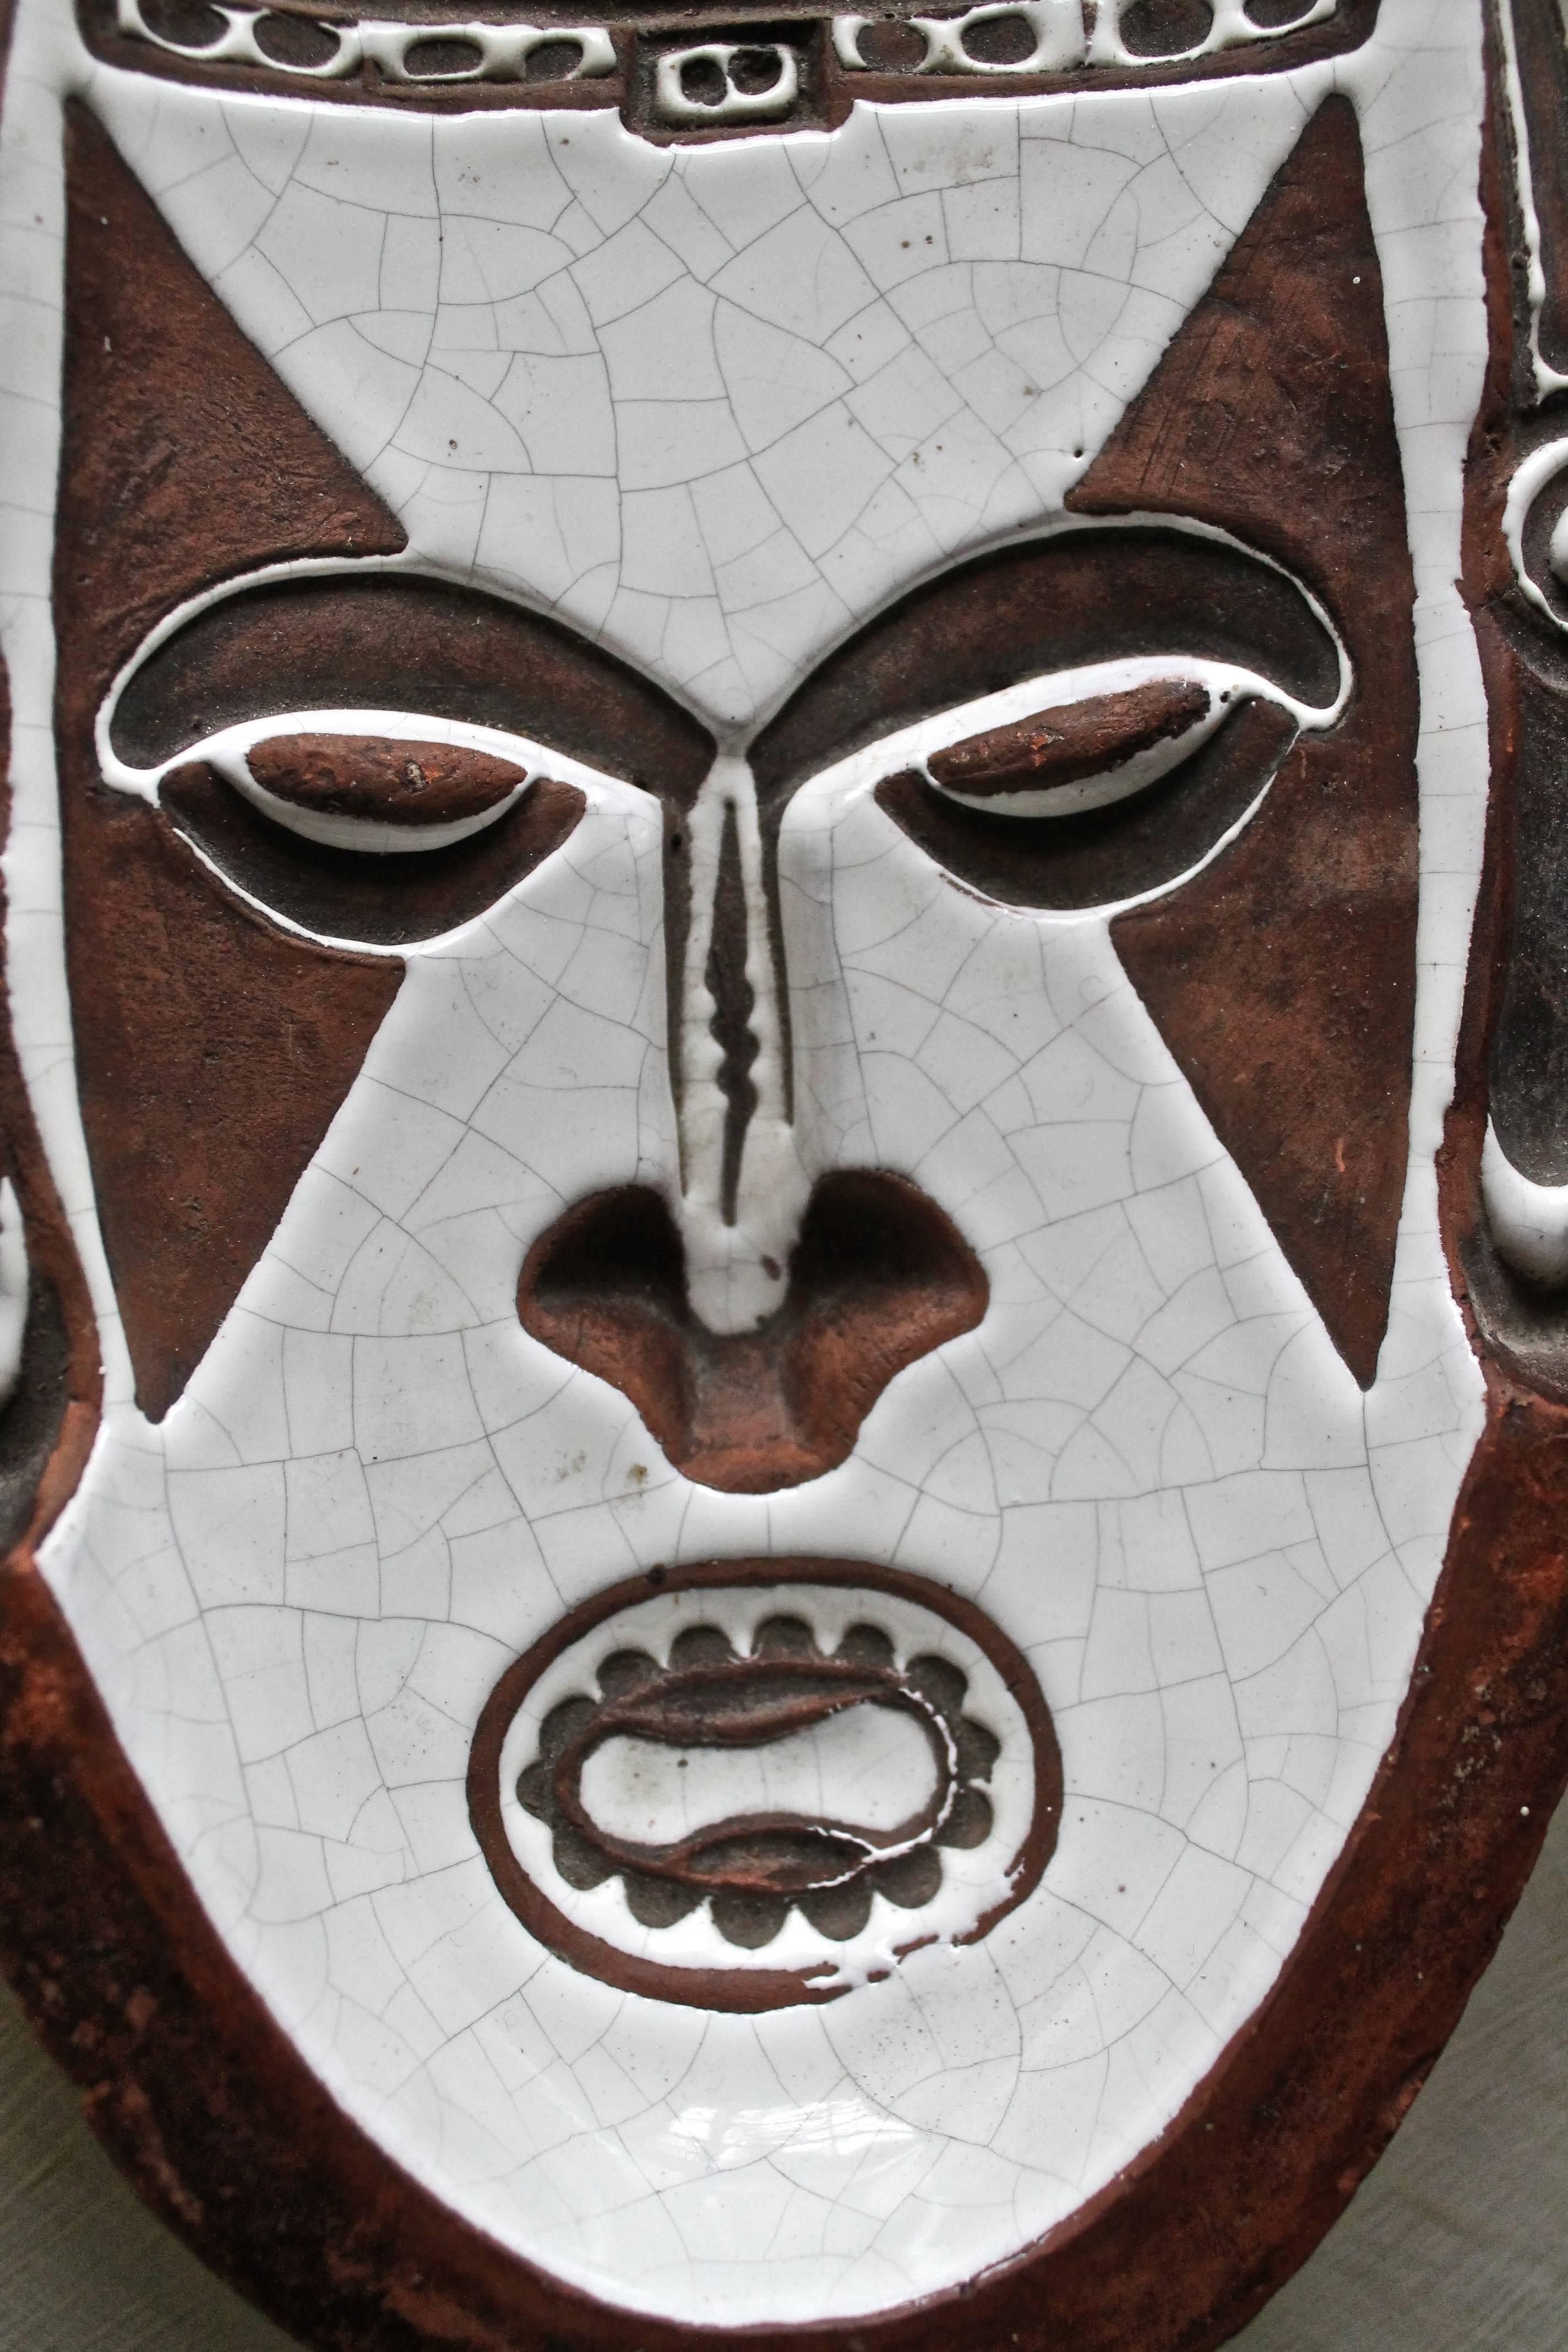 Bas relief en creux d'un masque tribal, glaçure blanche craquelée sur argile cuite brune. Vestiges d'une signature peinte sur le fond.